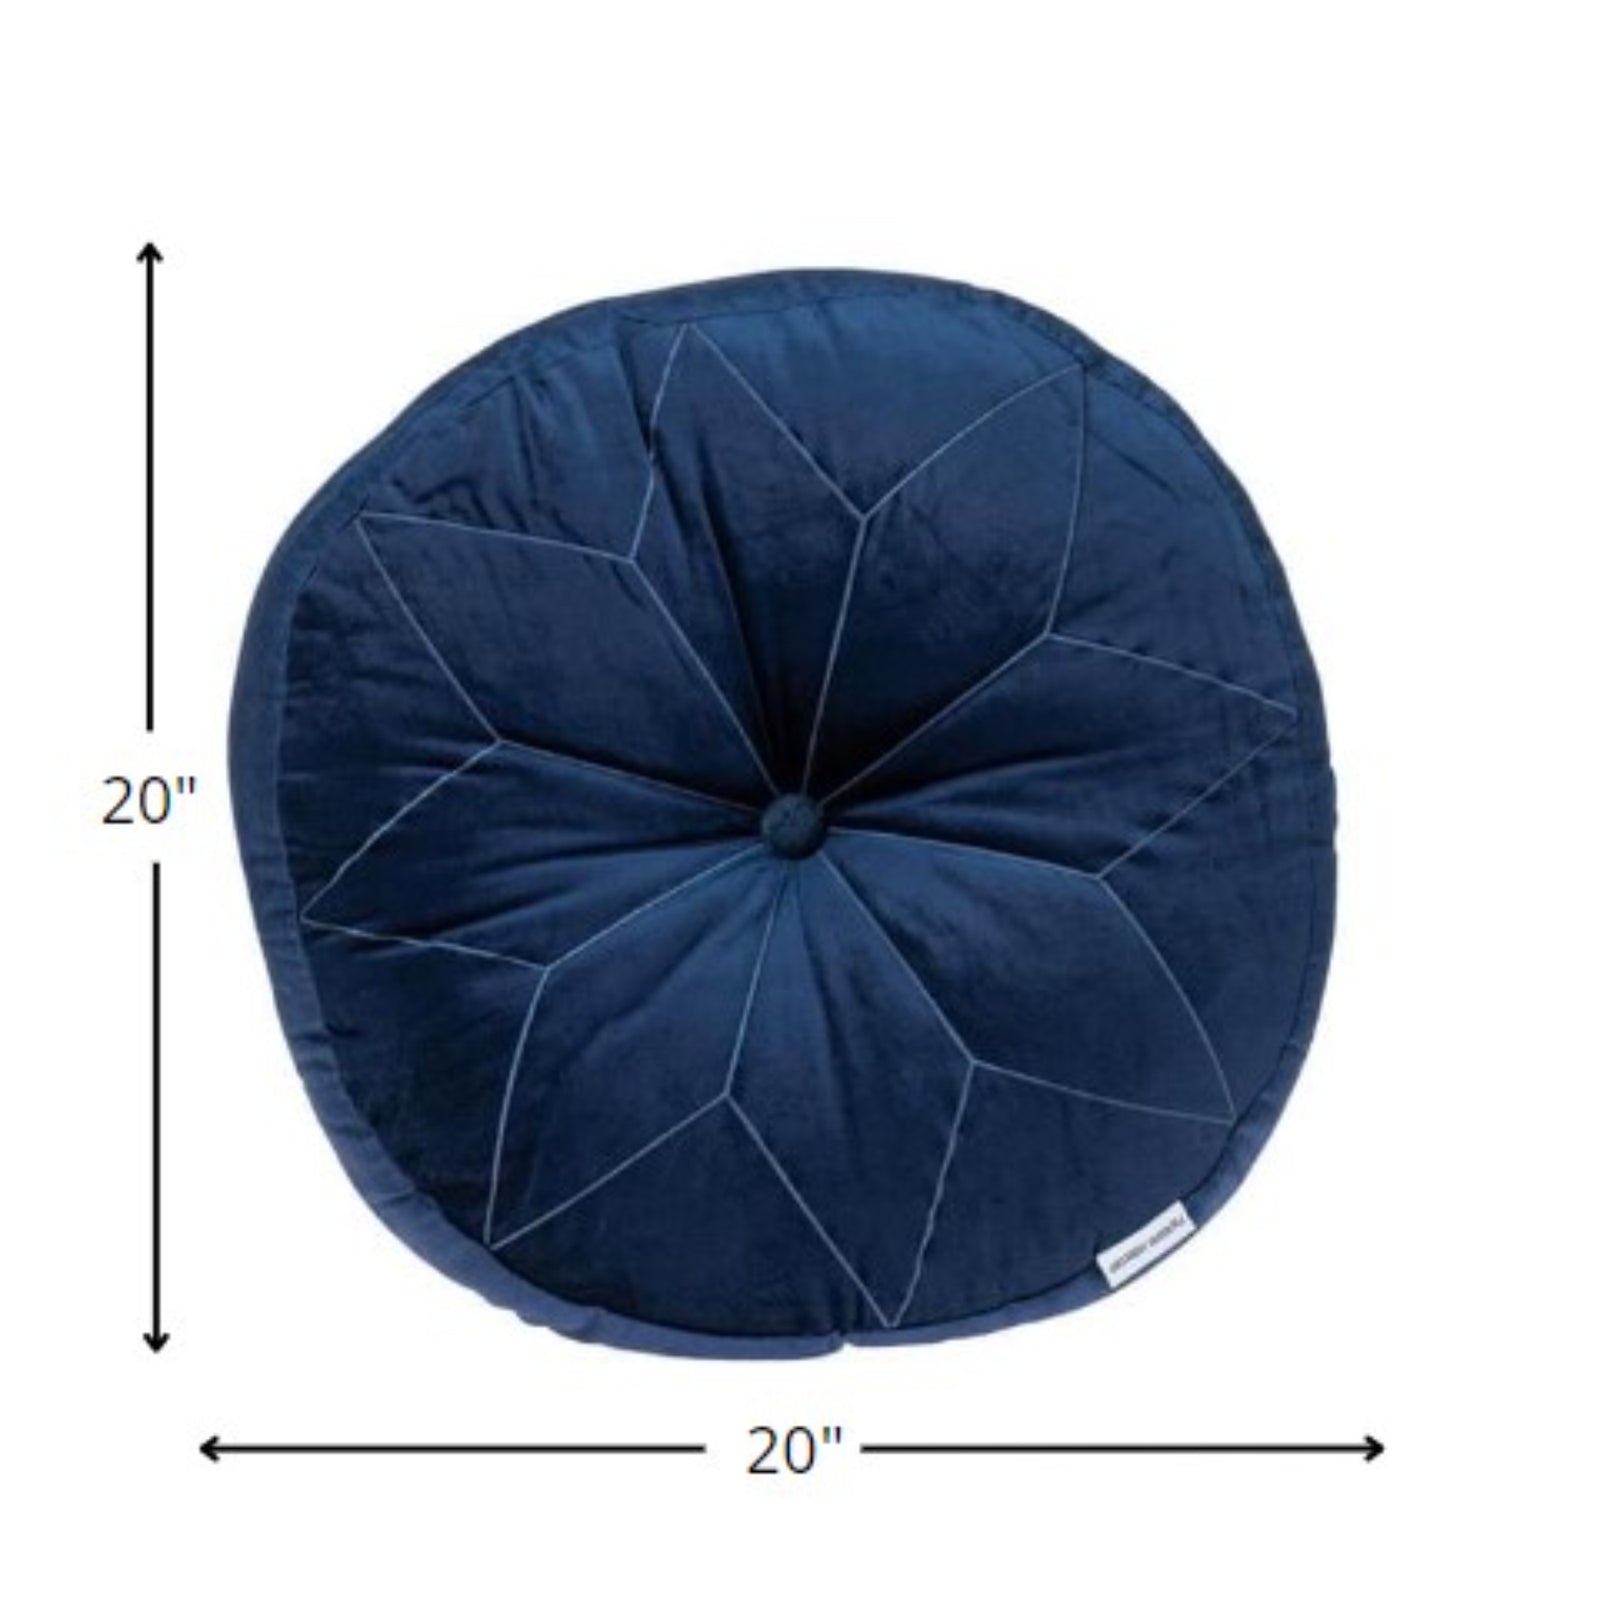 Round Tufted Navy Velvet Floor Pillow